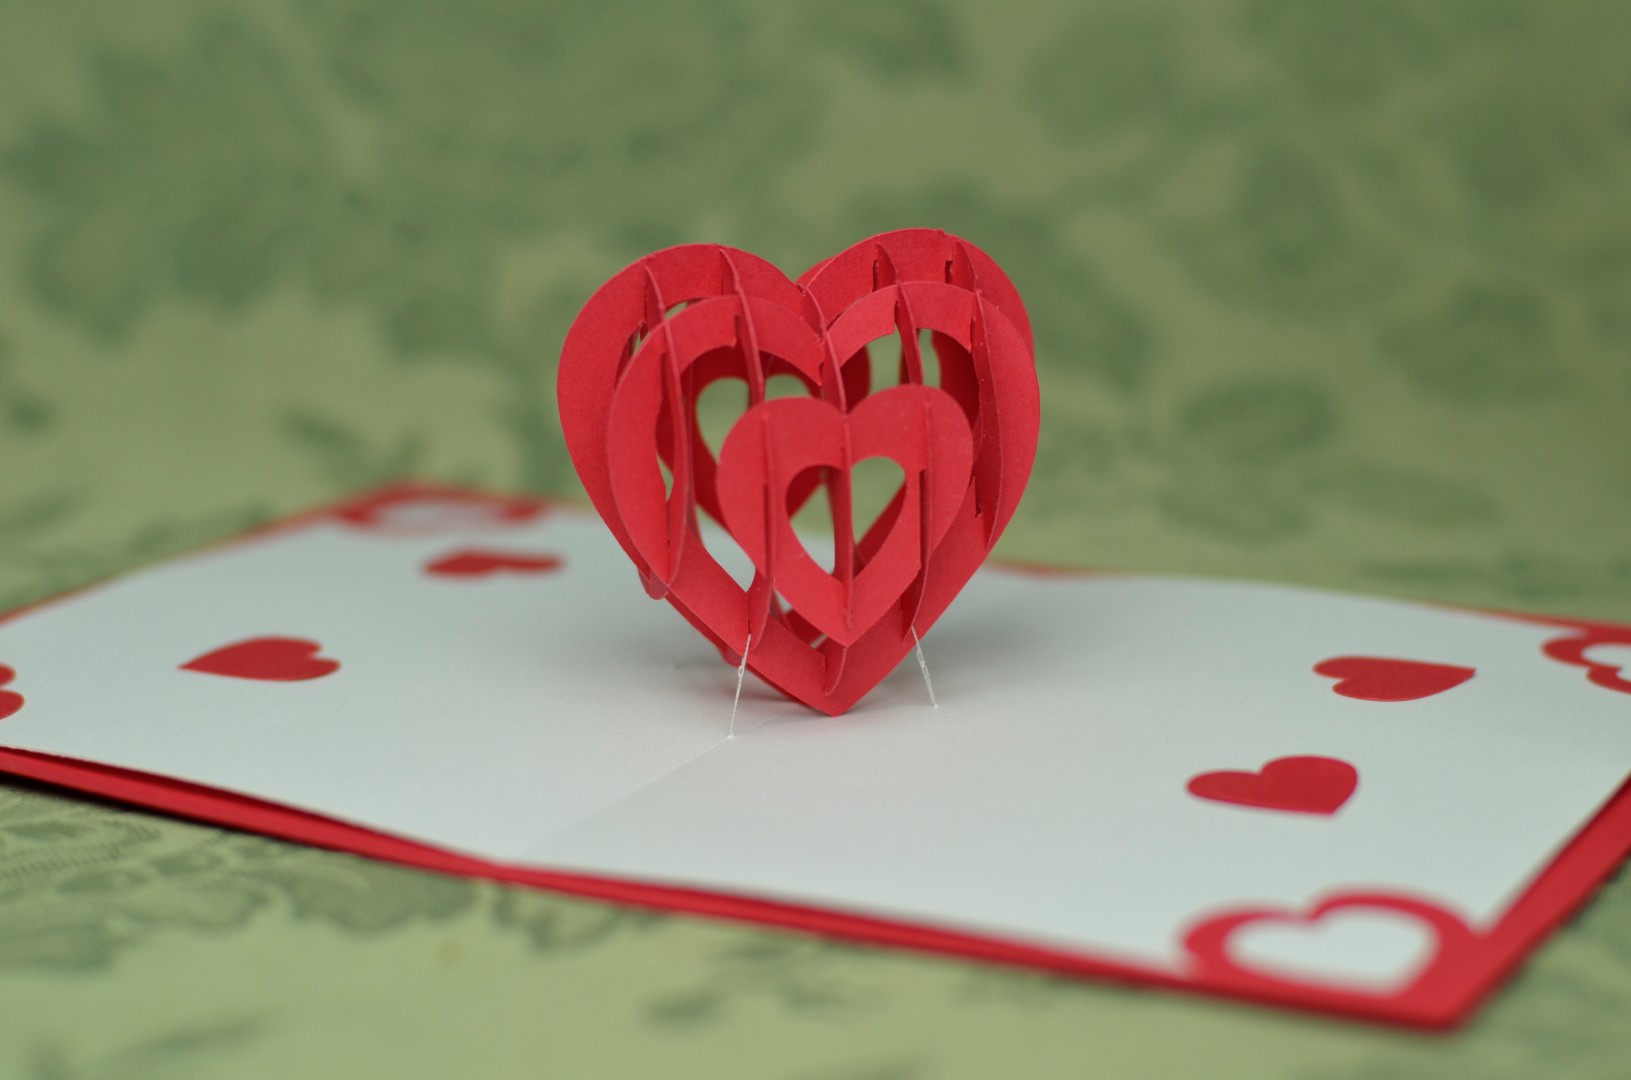 3D Heart Pop Up Card Template